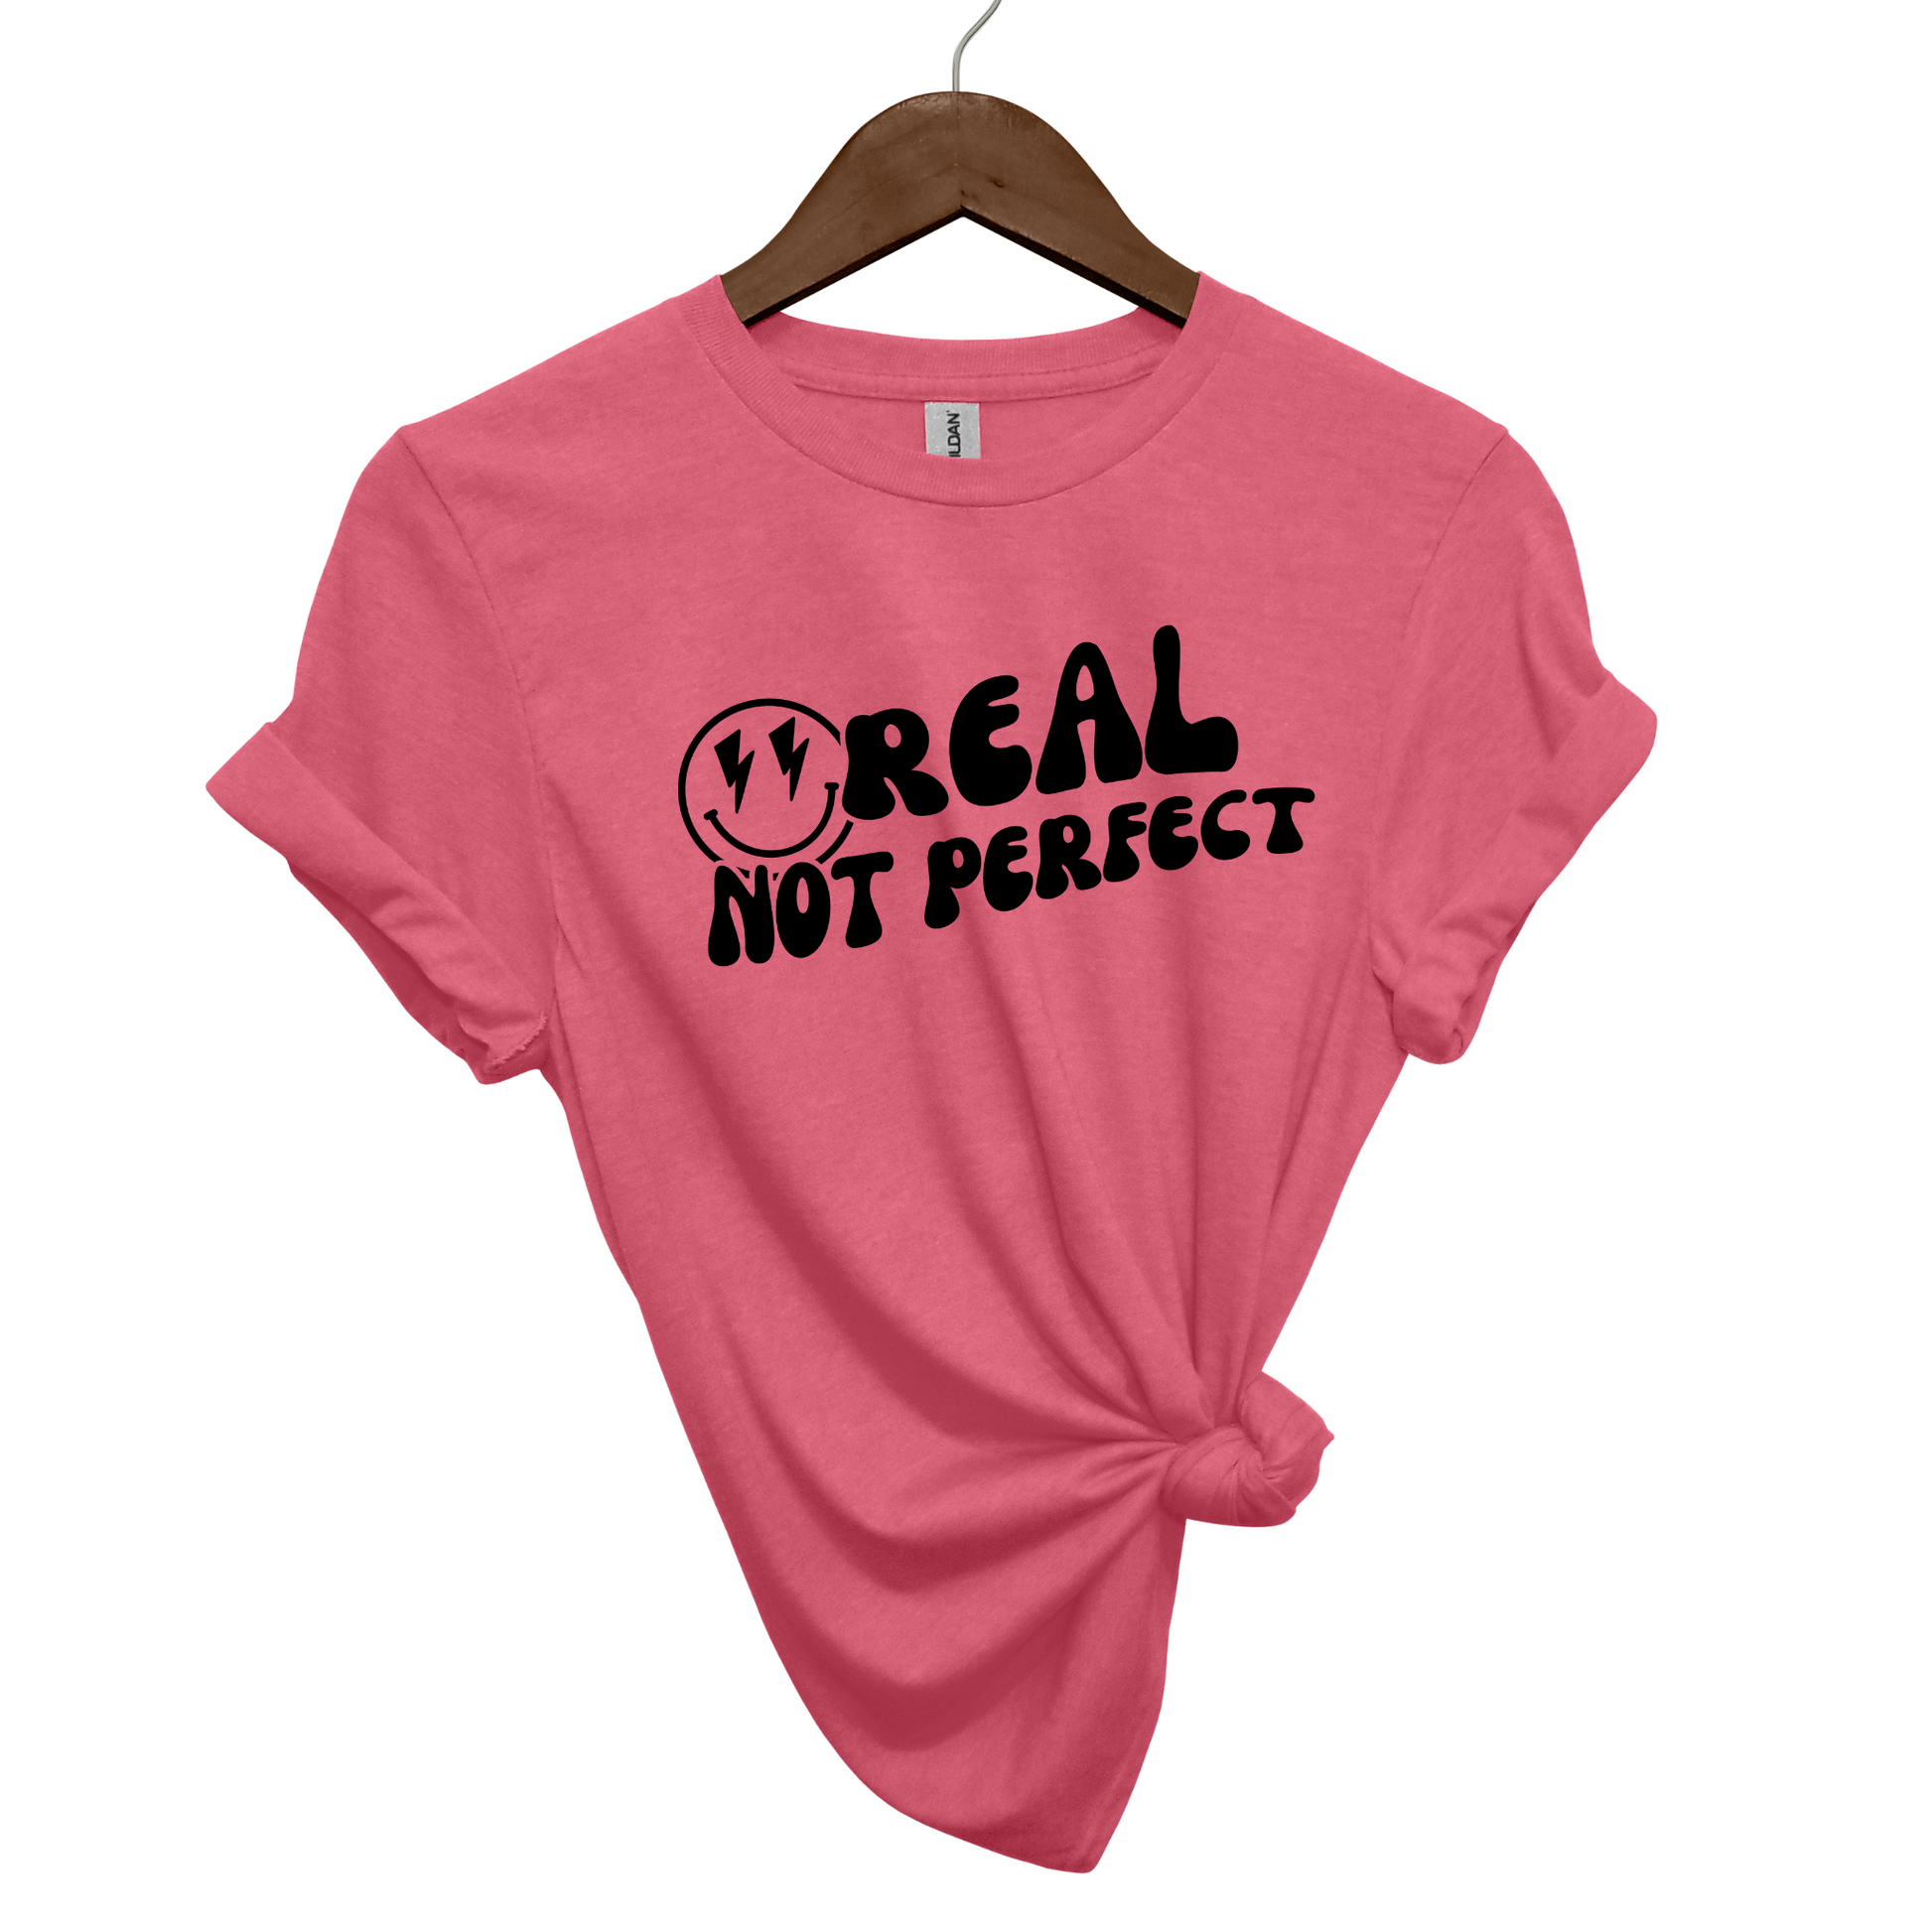 Real, Not Perfect Crewneck T Shirt heather cardinal